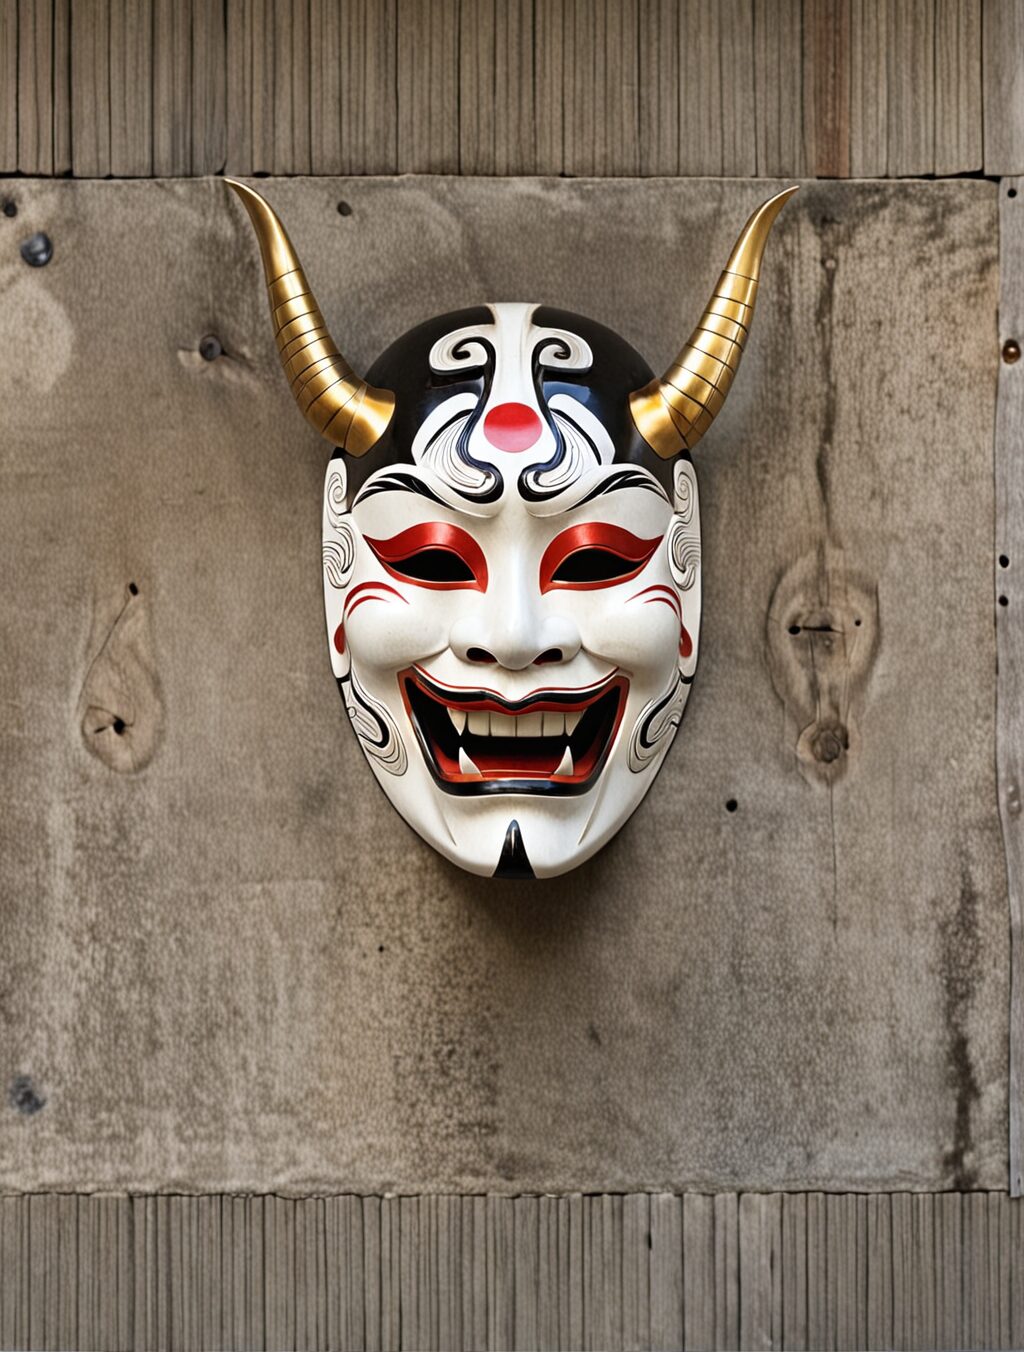 japanese cultural masks